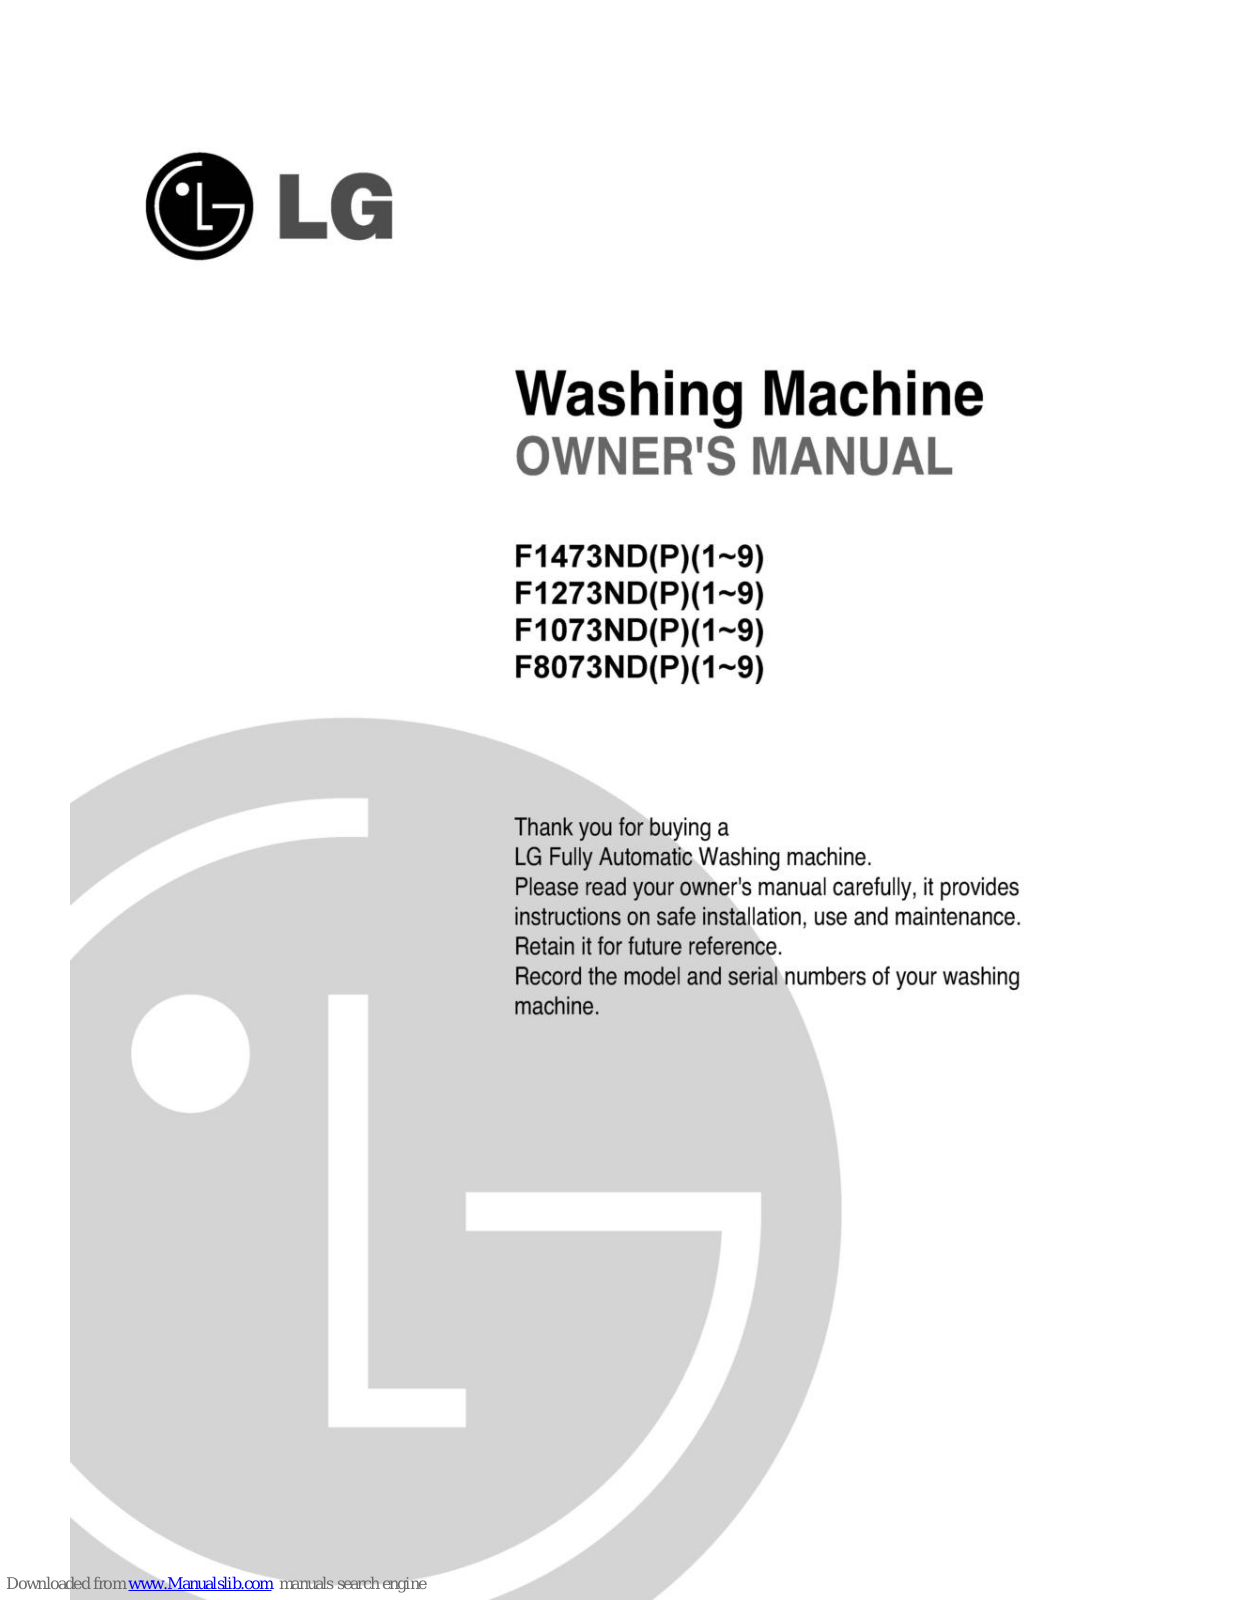 LG F1273ND, F1473ND1, F1073ND, F8073ND, F1473ND2 Owner's Manual